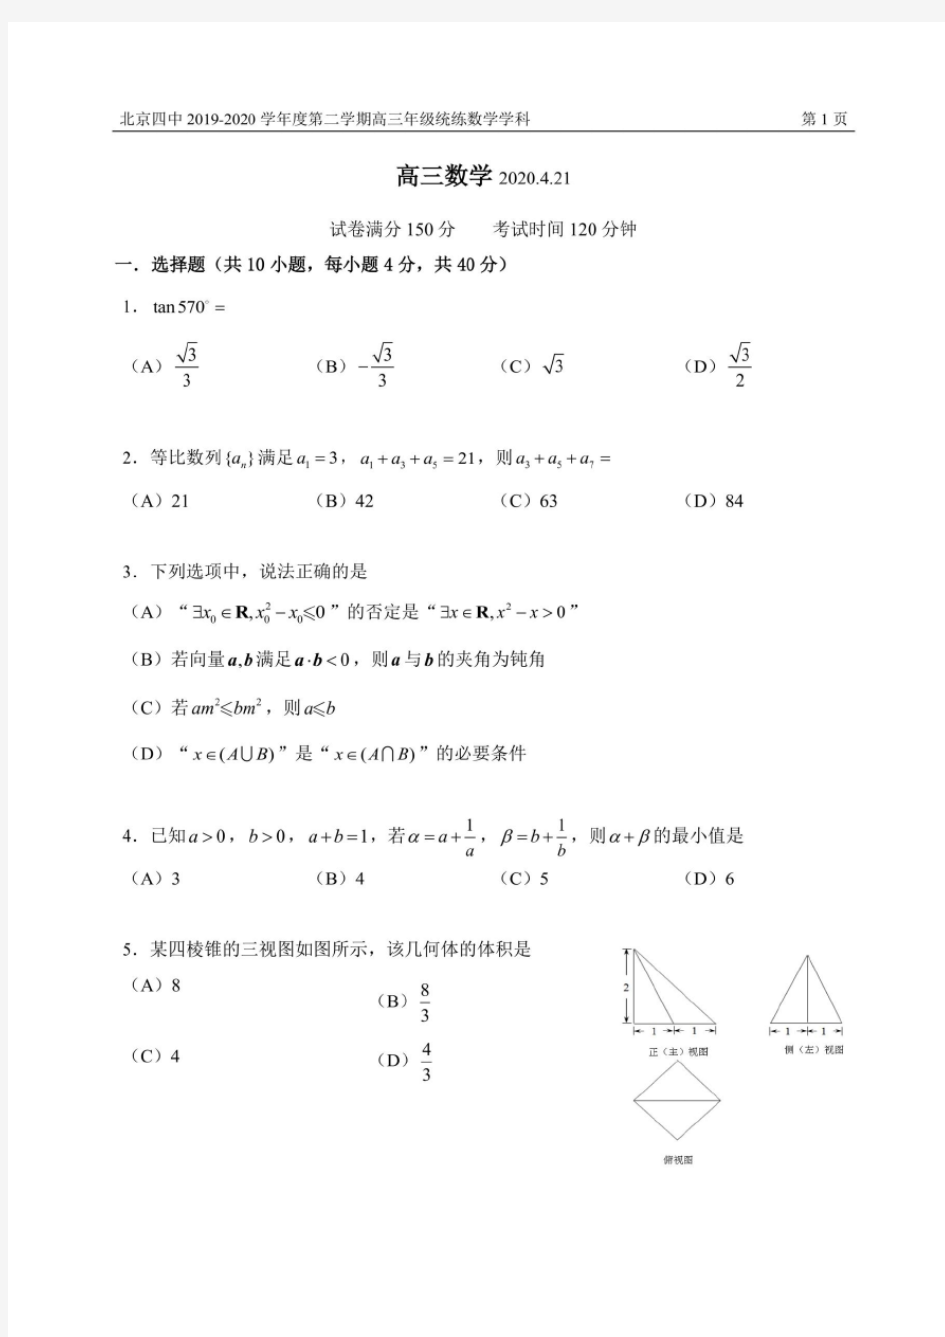 北京四中2019-2020学年度第二学期高三年级统练数学